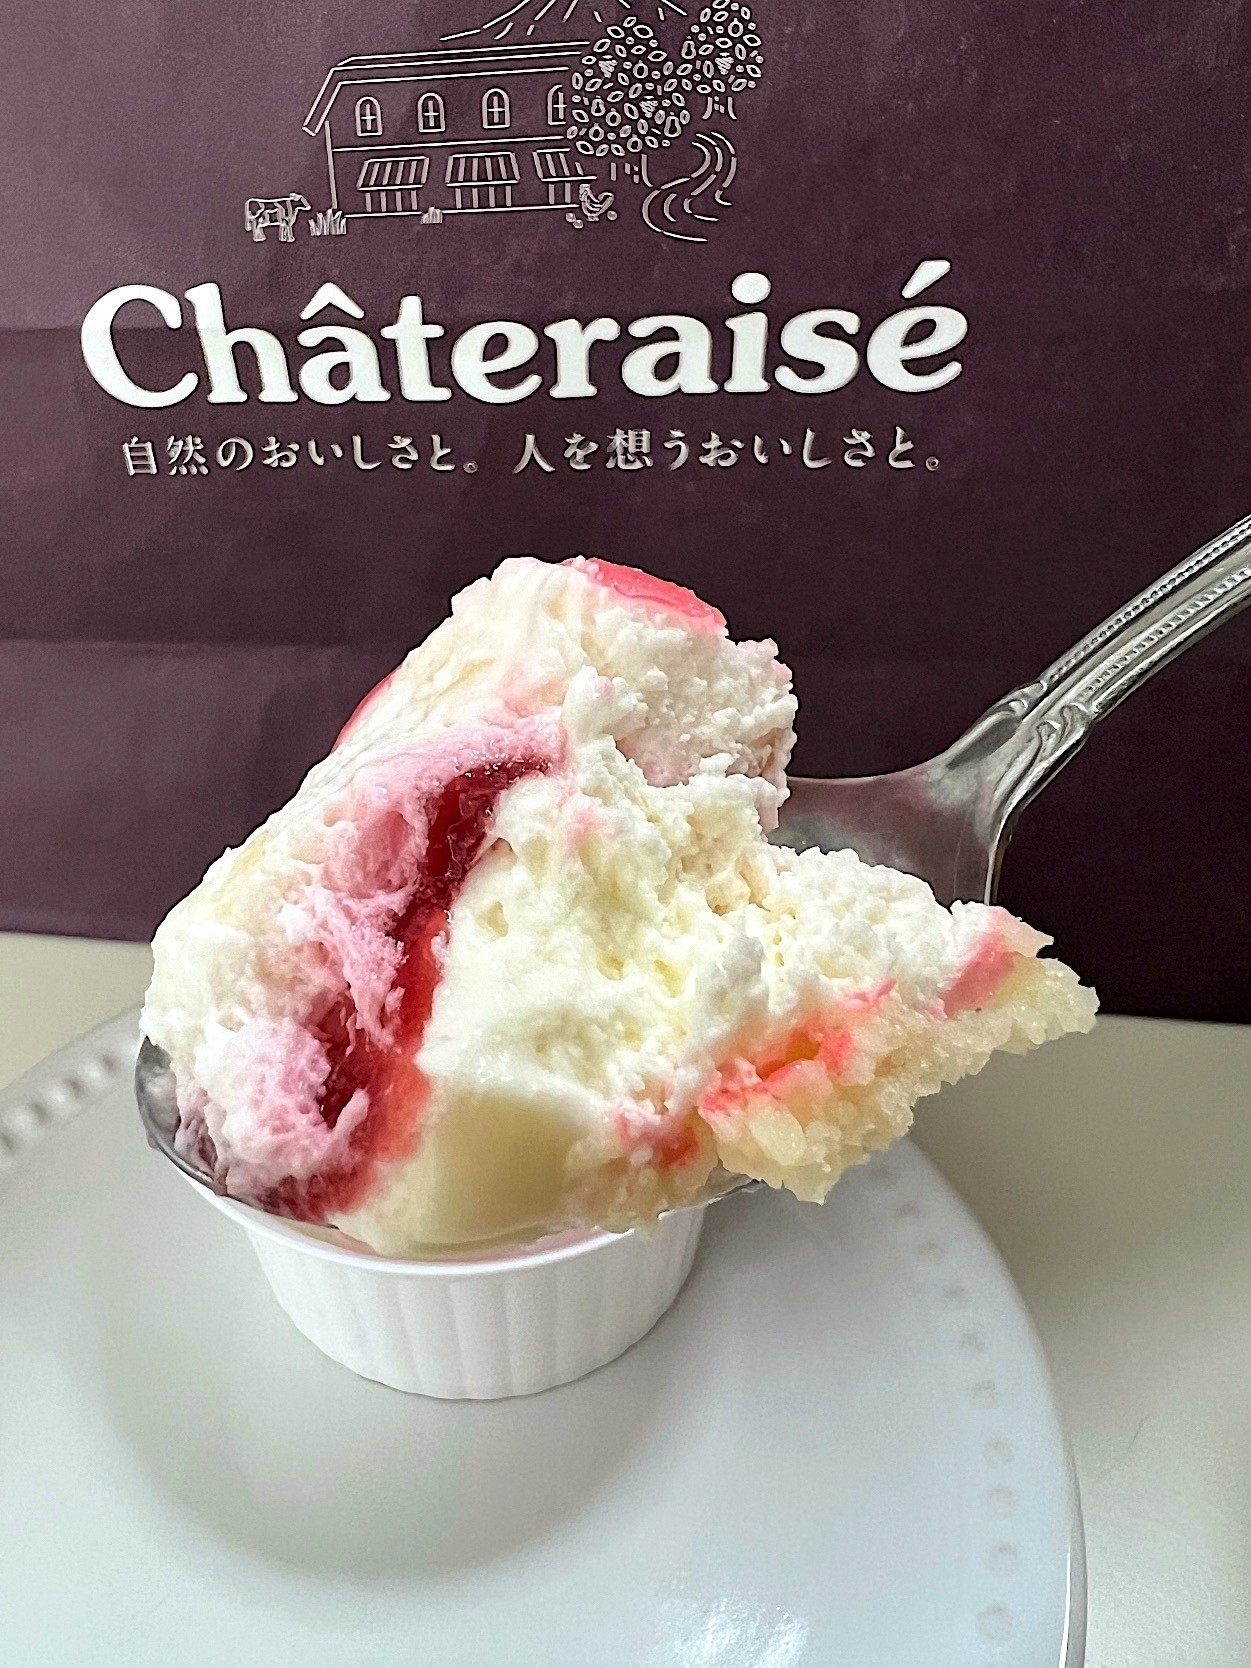 Chateraise（シャトレーゼ）のオススメのスイーツ「まんまる白桃ケーキ」